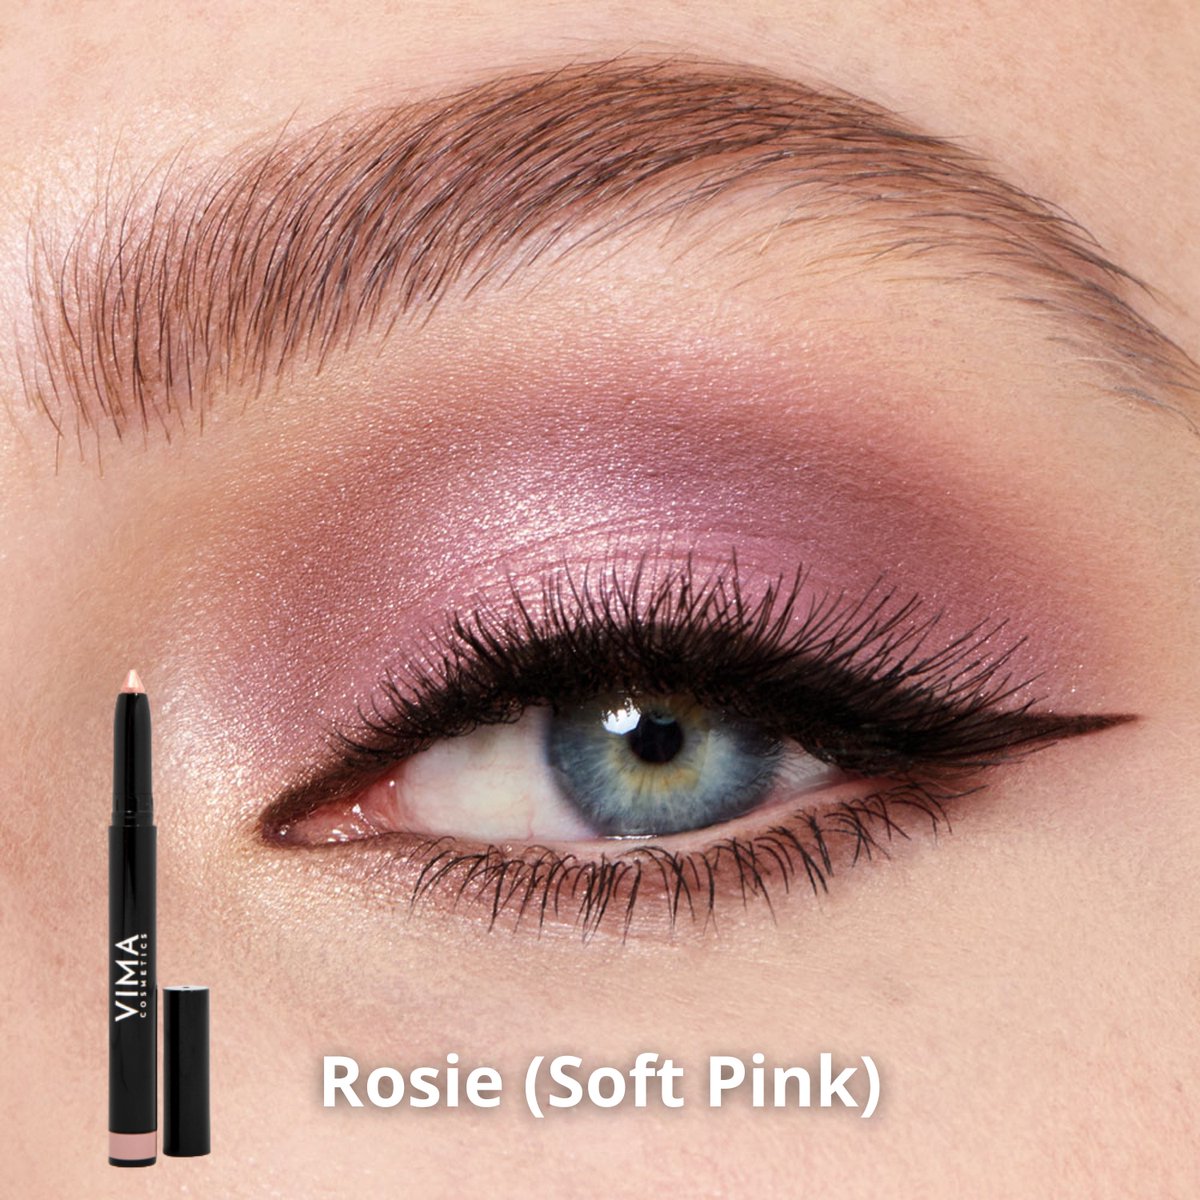 VIMA Eyeshadow stick - Soft Pink (Rosie) - Long-Lasting - High Pigmentation - Waterproof